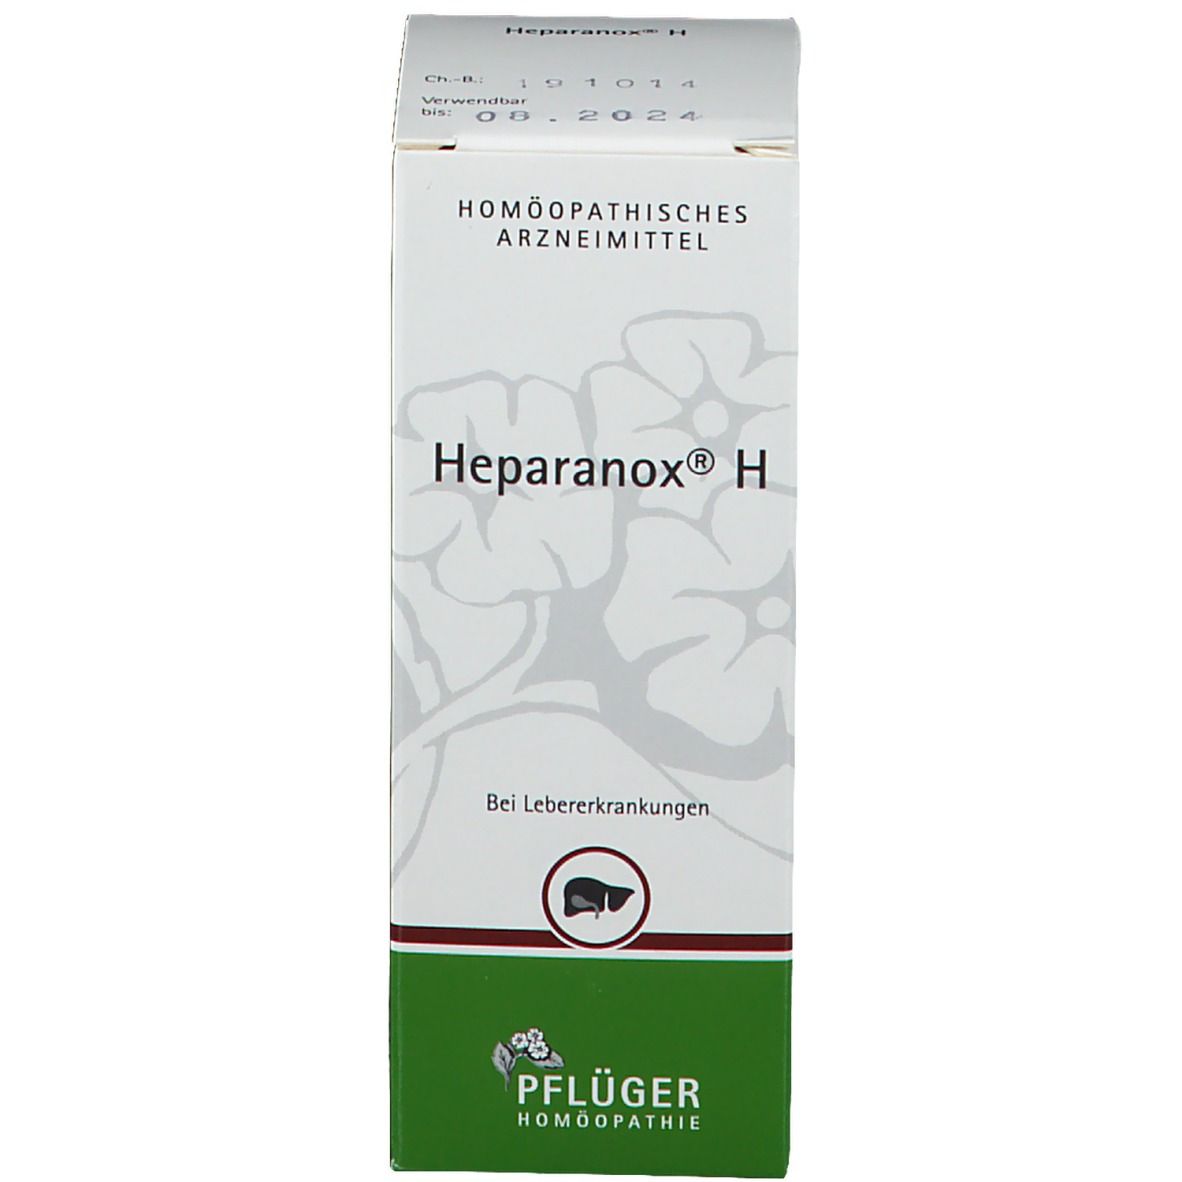 Heparanox® H